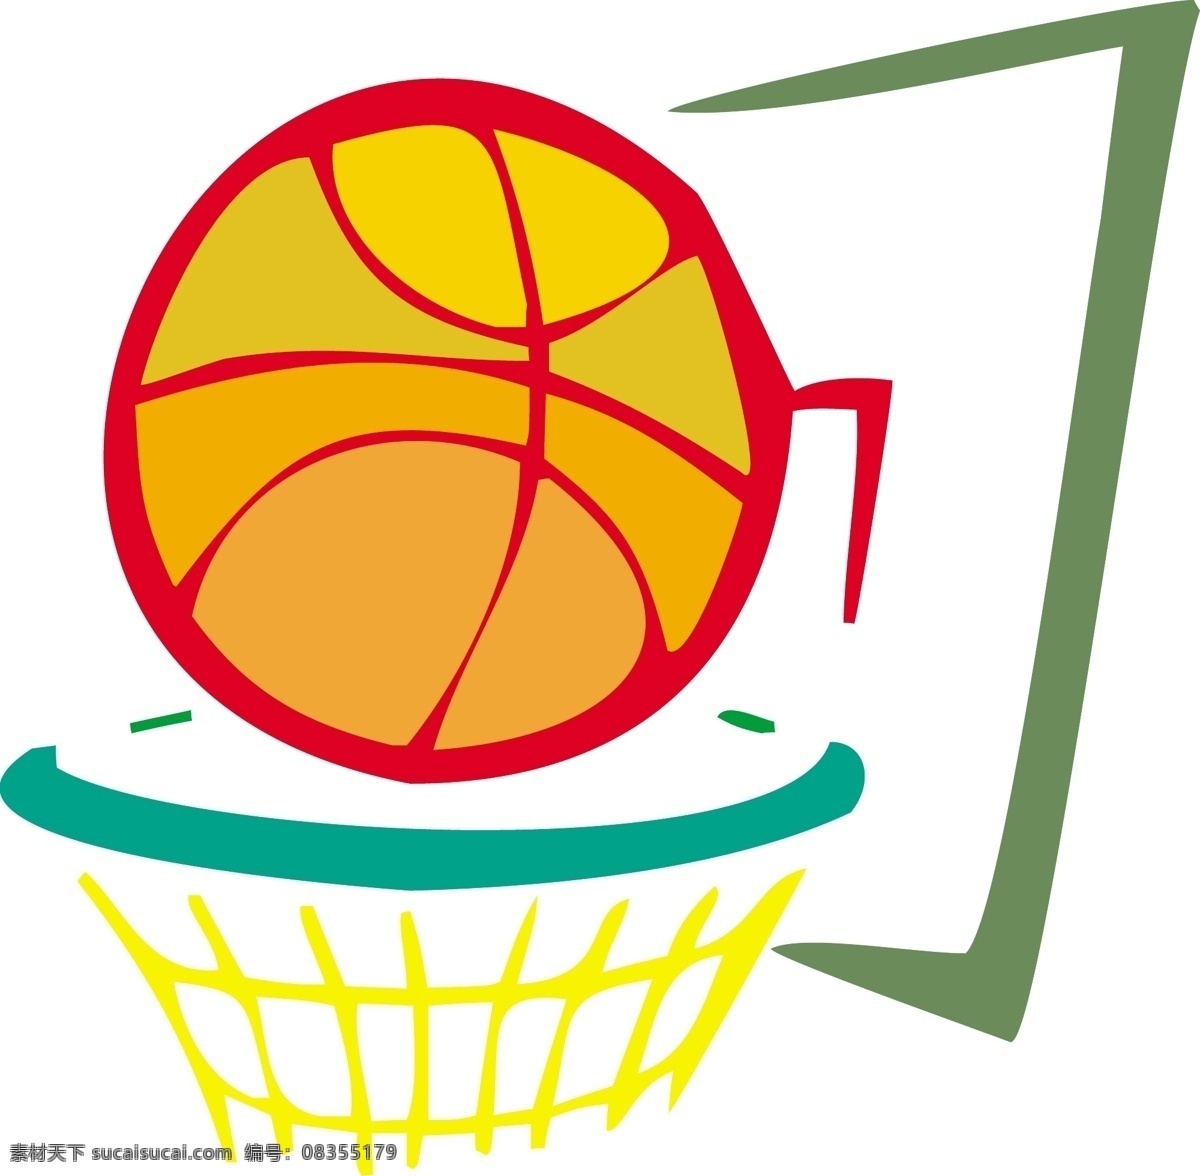 篮球 矢量图 篮球矢量图 商业矢量 矢量下载 矢量运动 网页矢量 其他矢量图